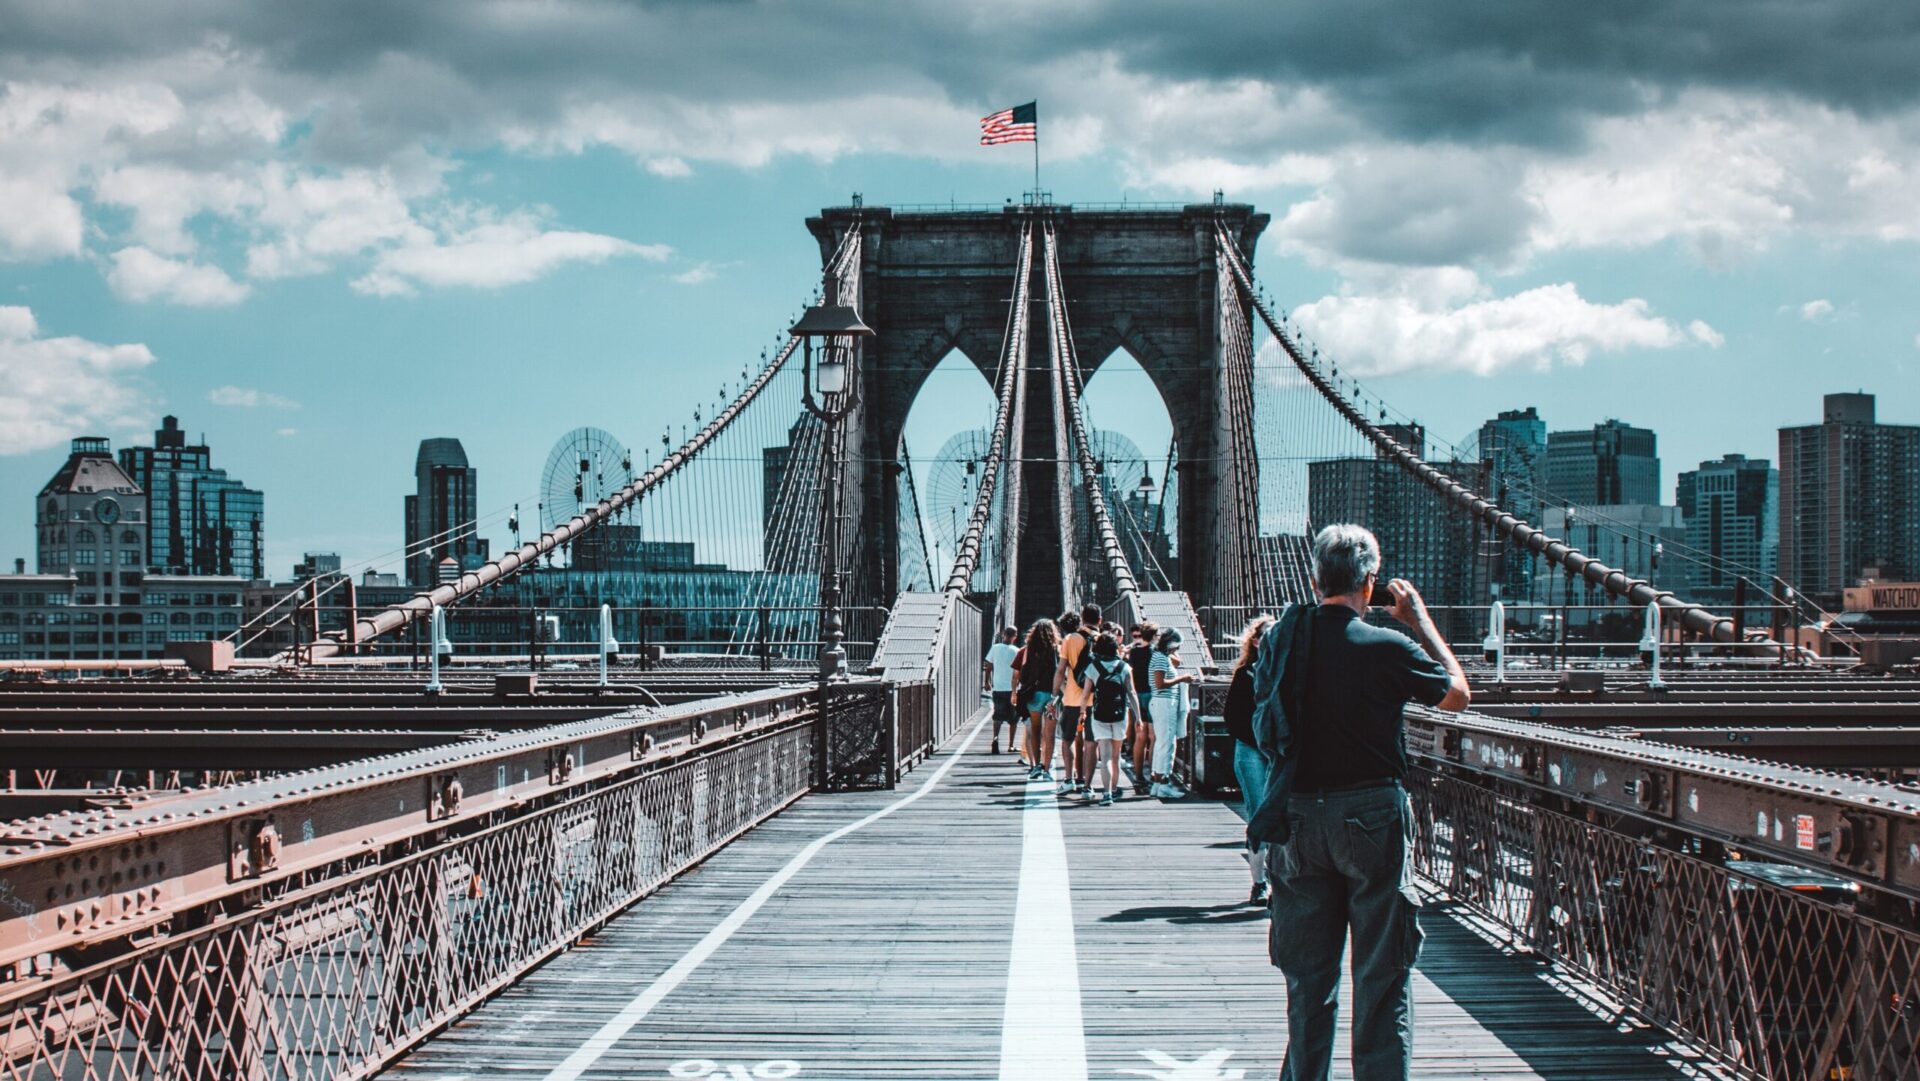 Pourquoi le pont de Brooklyn est-il connu ?